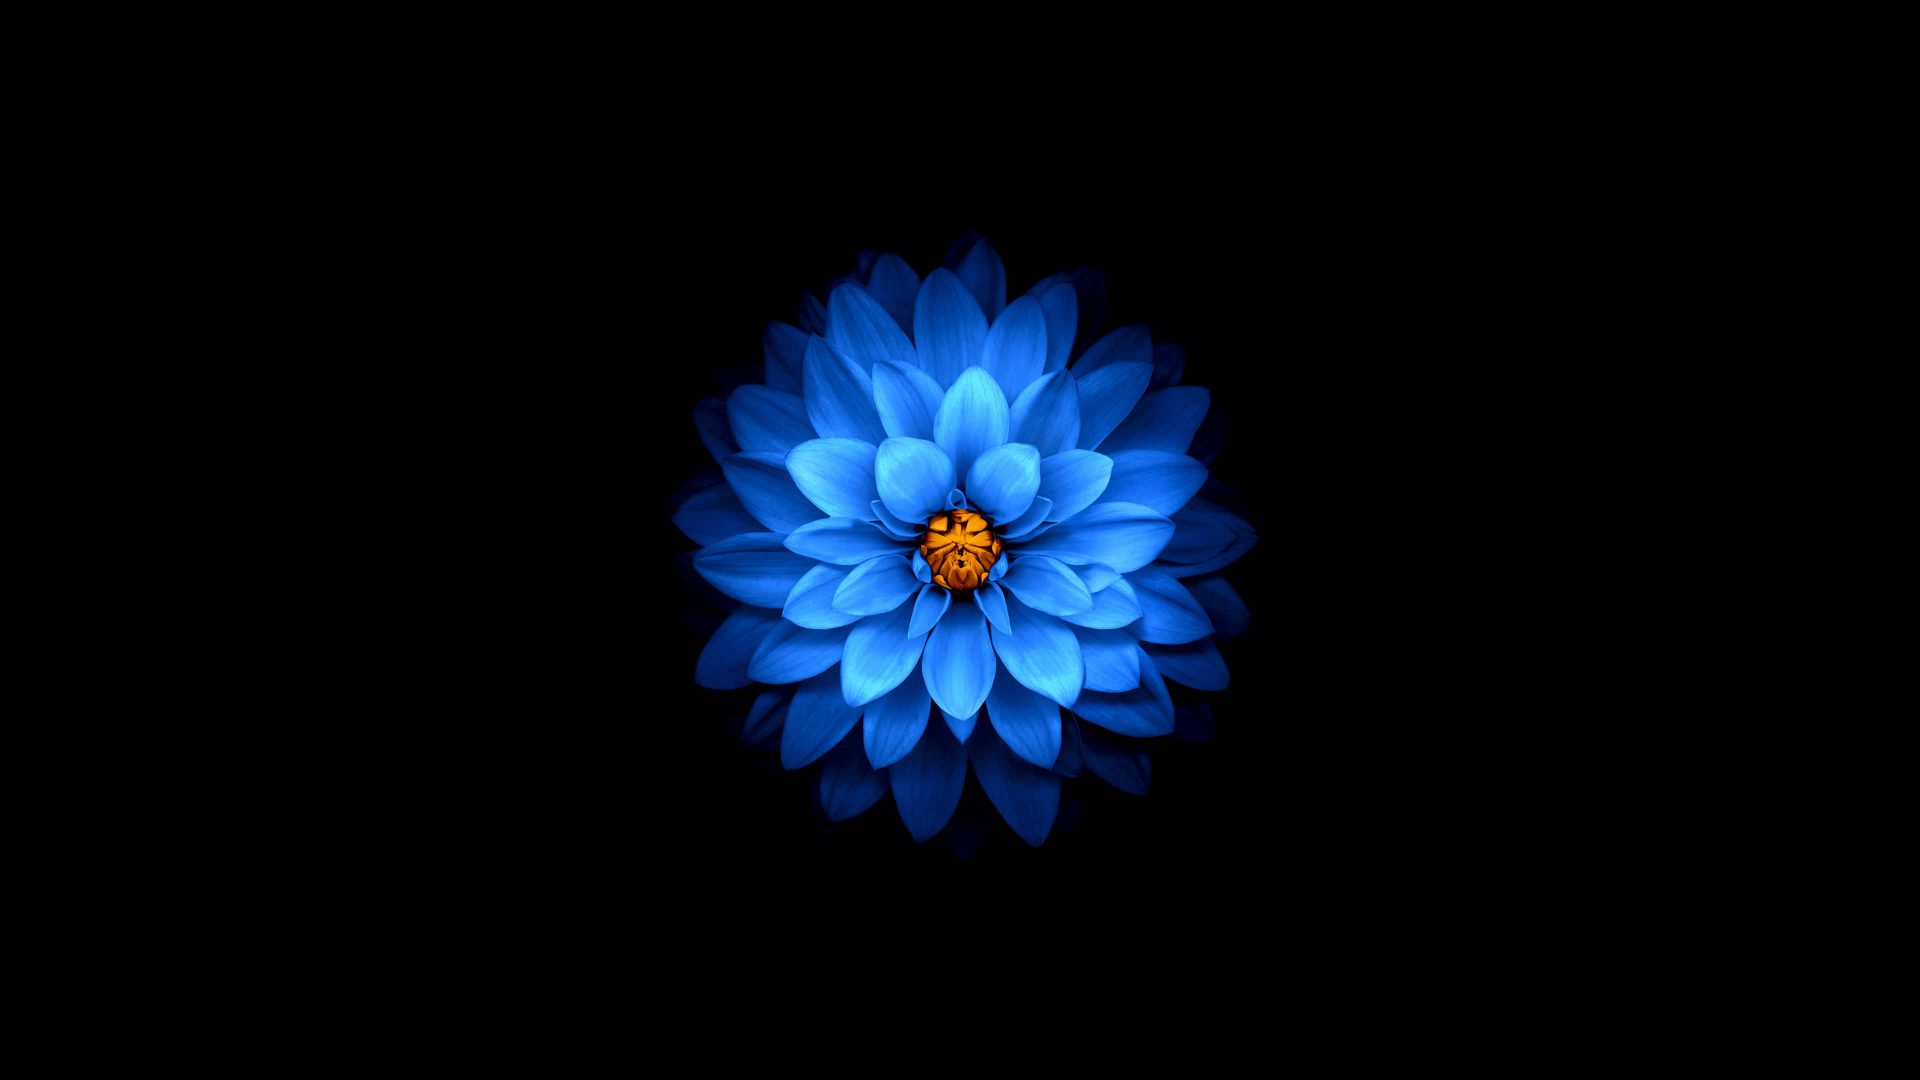 Bộ sưu tập hình ảnh hoa sen xanh đẹp nhất 33